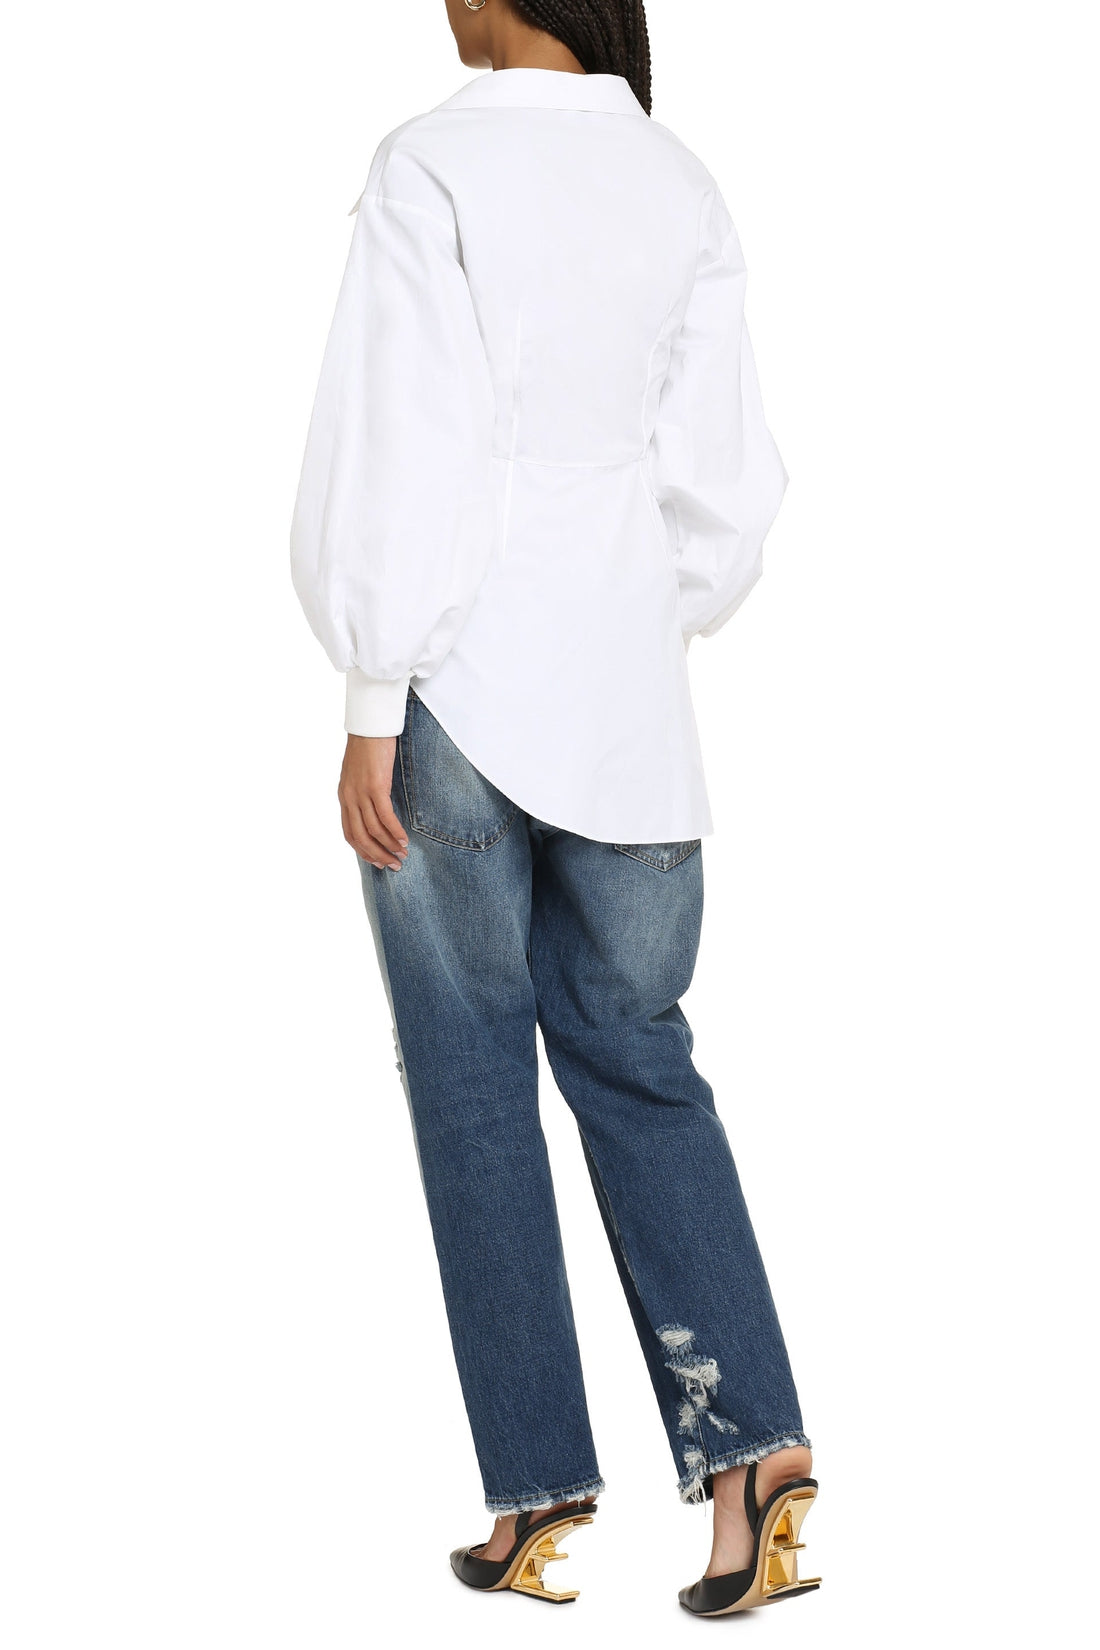 Alexander McQueen-OUTLET-SALE-Asymmetric cotton shirt-ARCHIVIST